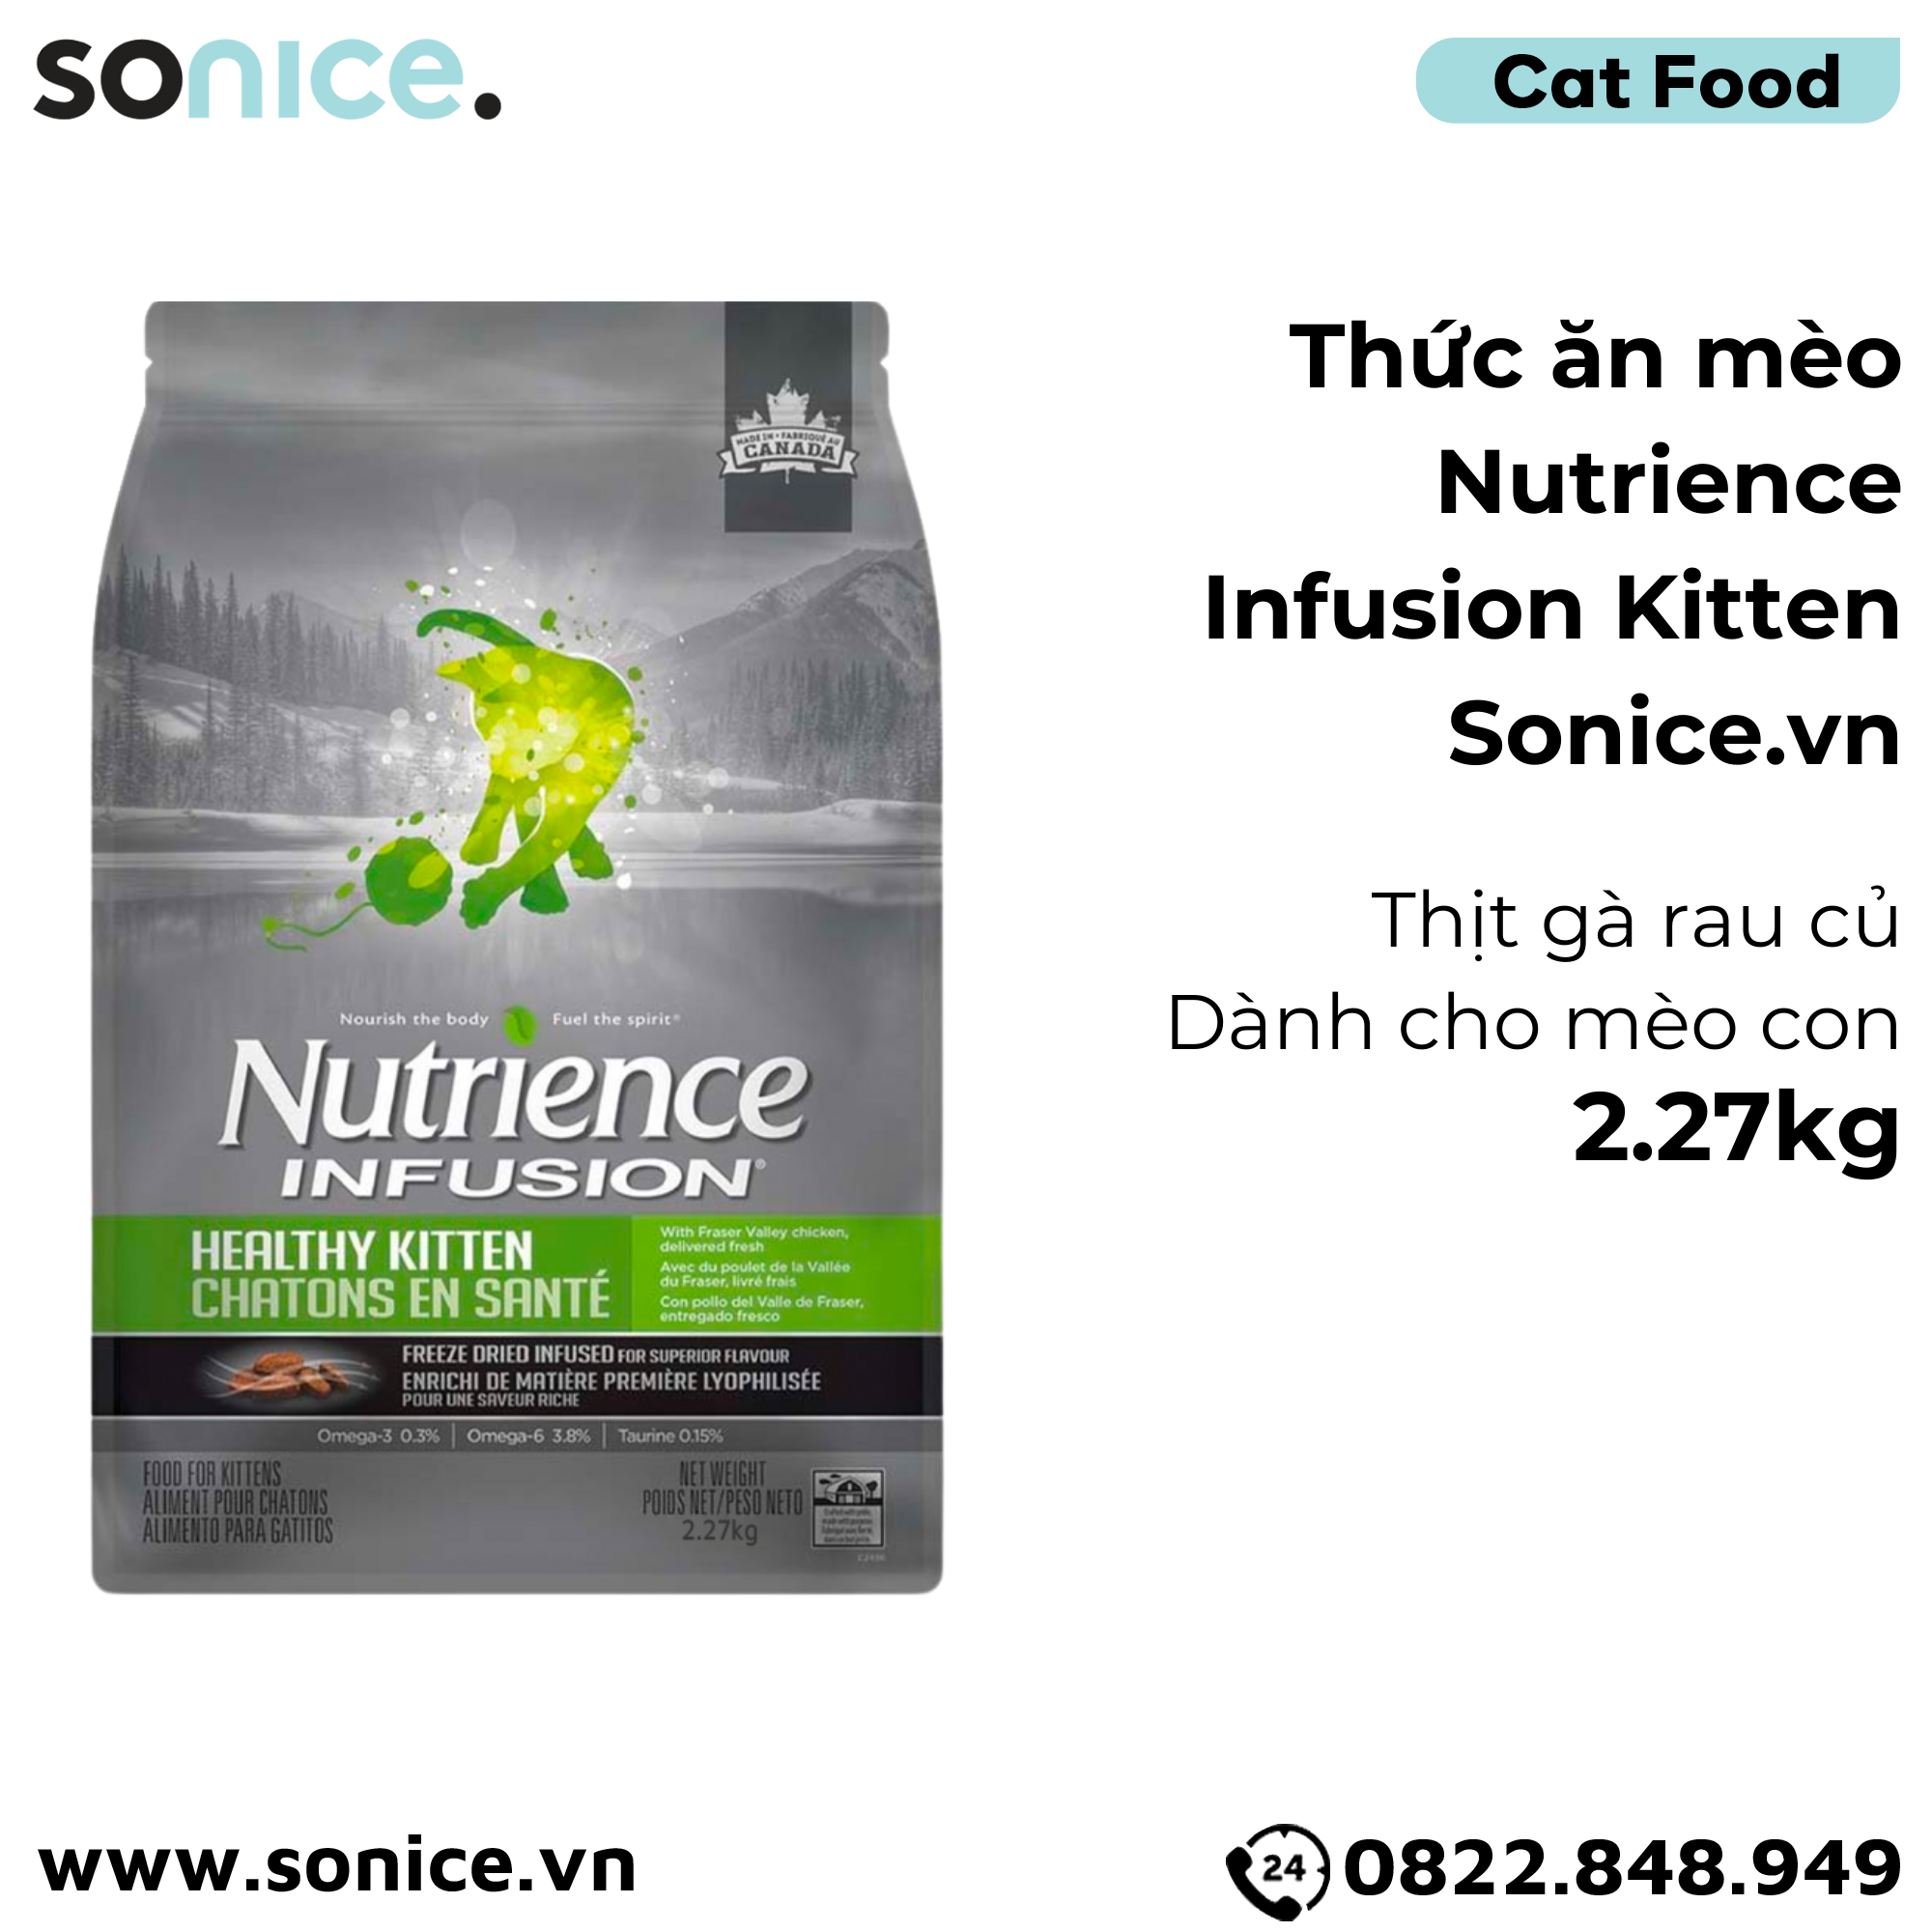  Thức ăn mèo Nutrience Infusion Kitten thịt gà rau củ 2.27kg - Dành cho mèo con SONICE. 